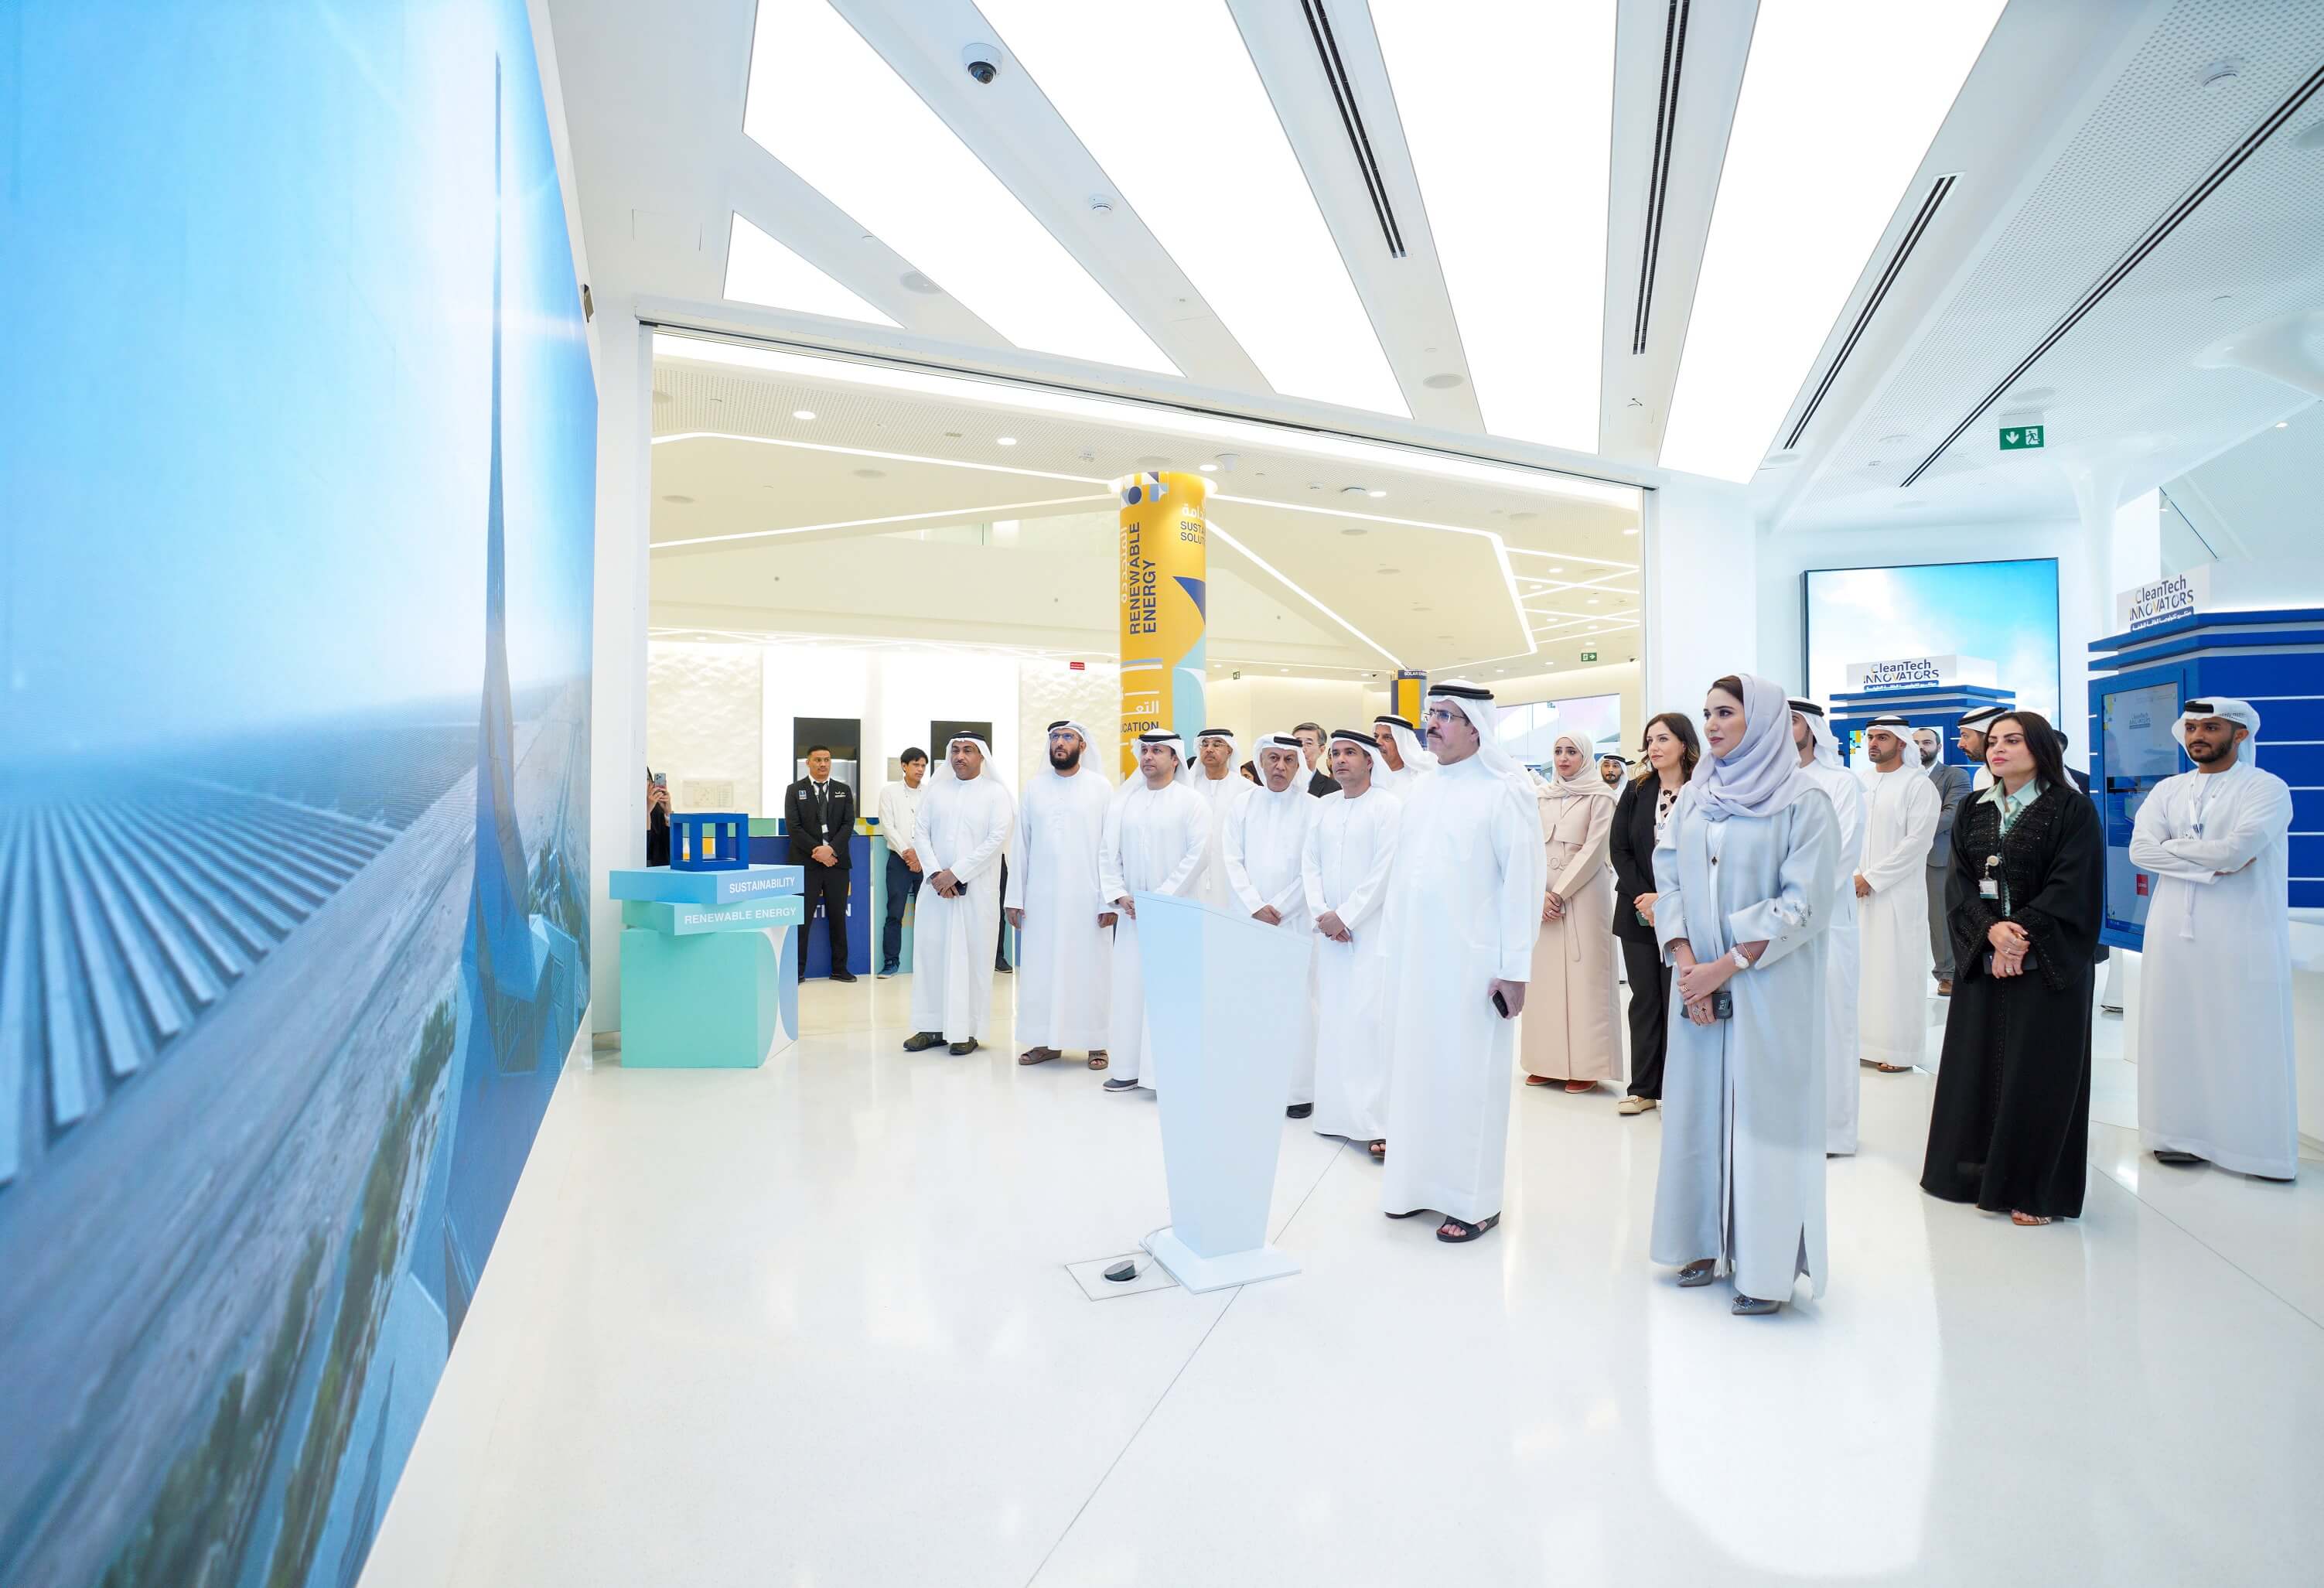 بالتزامن مع "الإمارات تبتكر" معالي العضو المنتدب الرئيس التنفيذي لهيئة كهرباء ومياه دبي يفتتح فعالية "مبتكرو تكنولوجيا الطاقة النظيفة" 